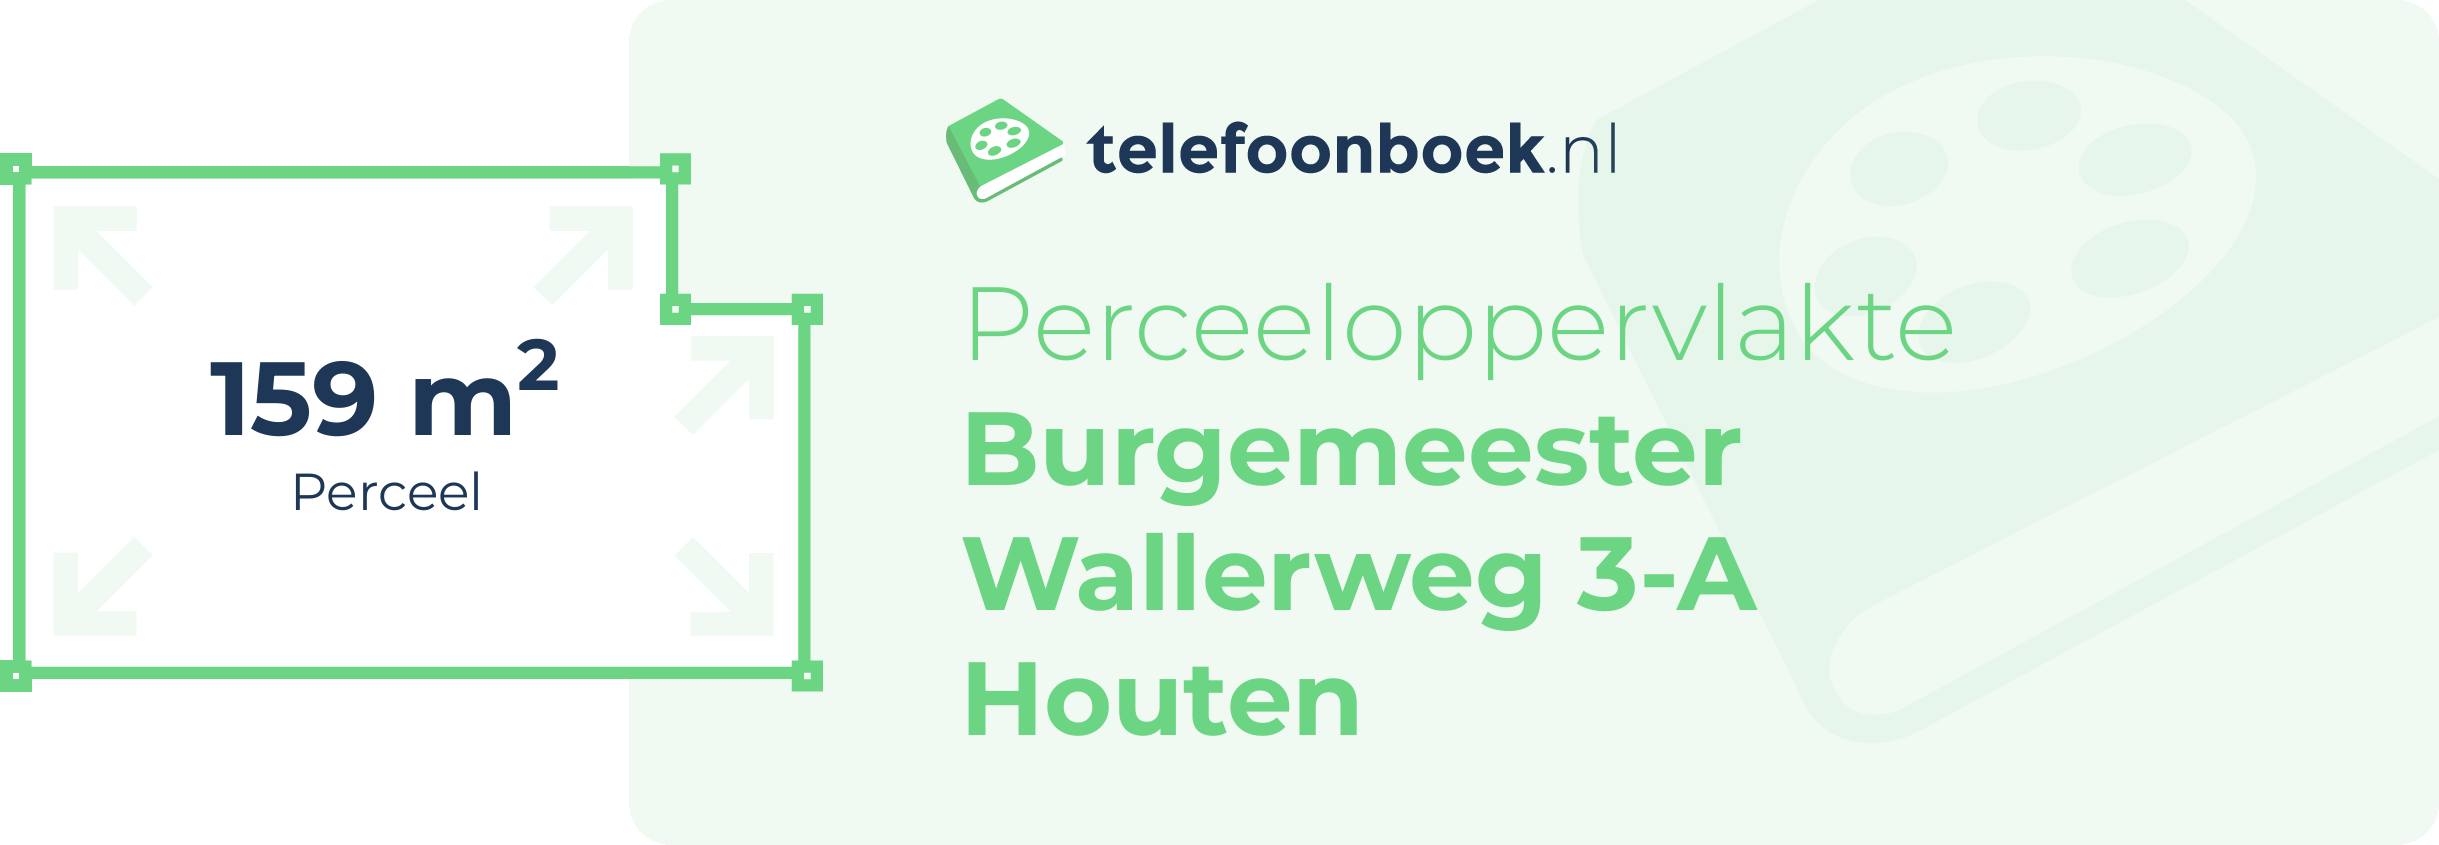 Perceeloppervlakte Burgemeester Wallerweg 3-A Houten